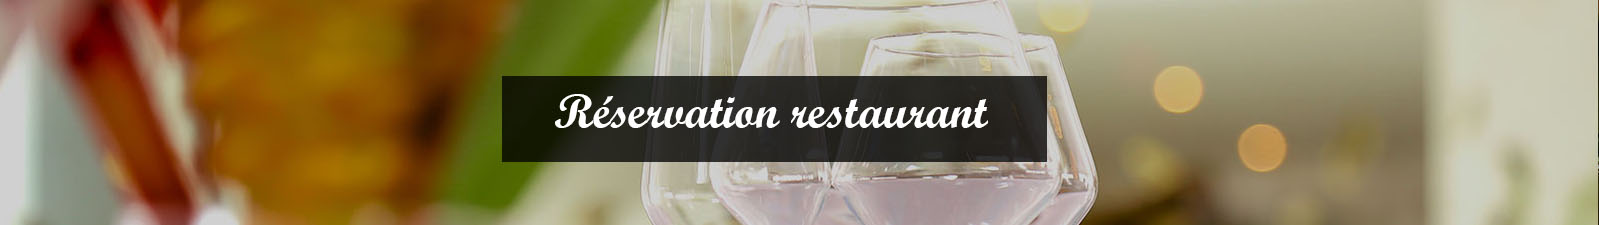 reservation-restaurant.jpg